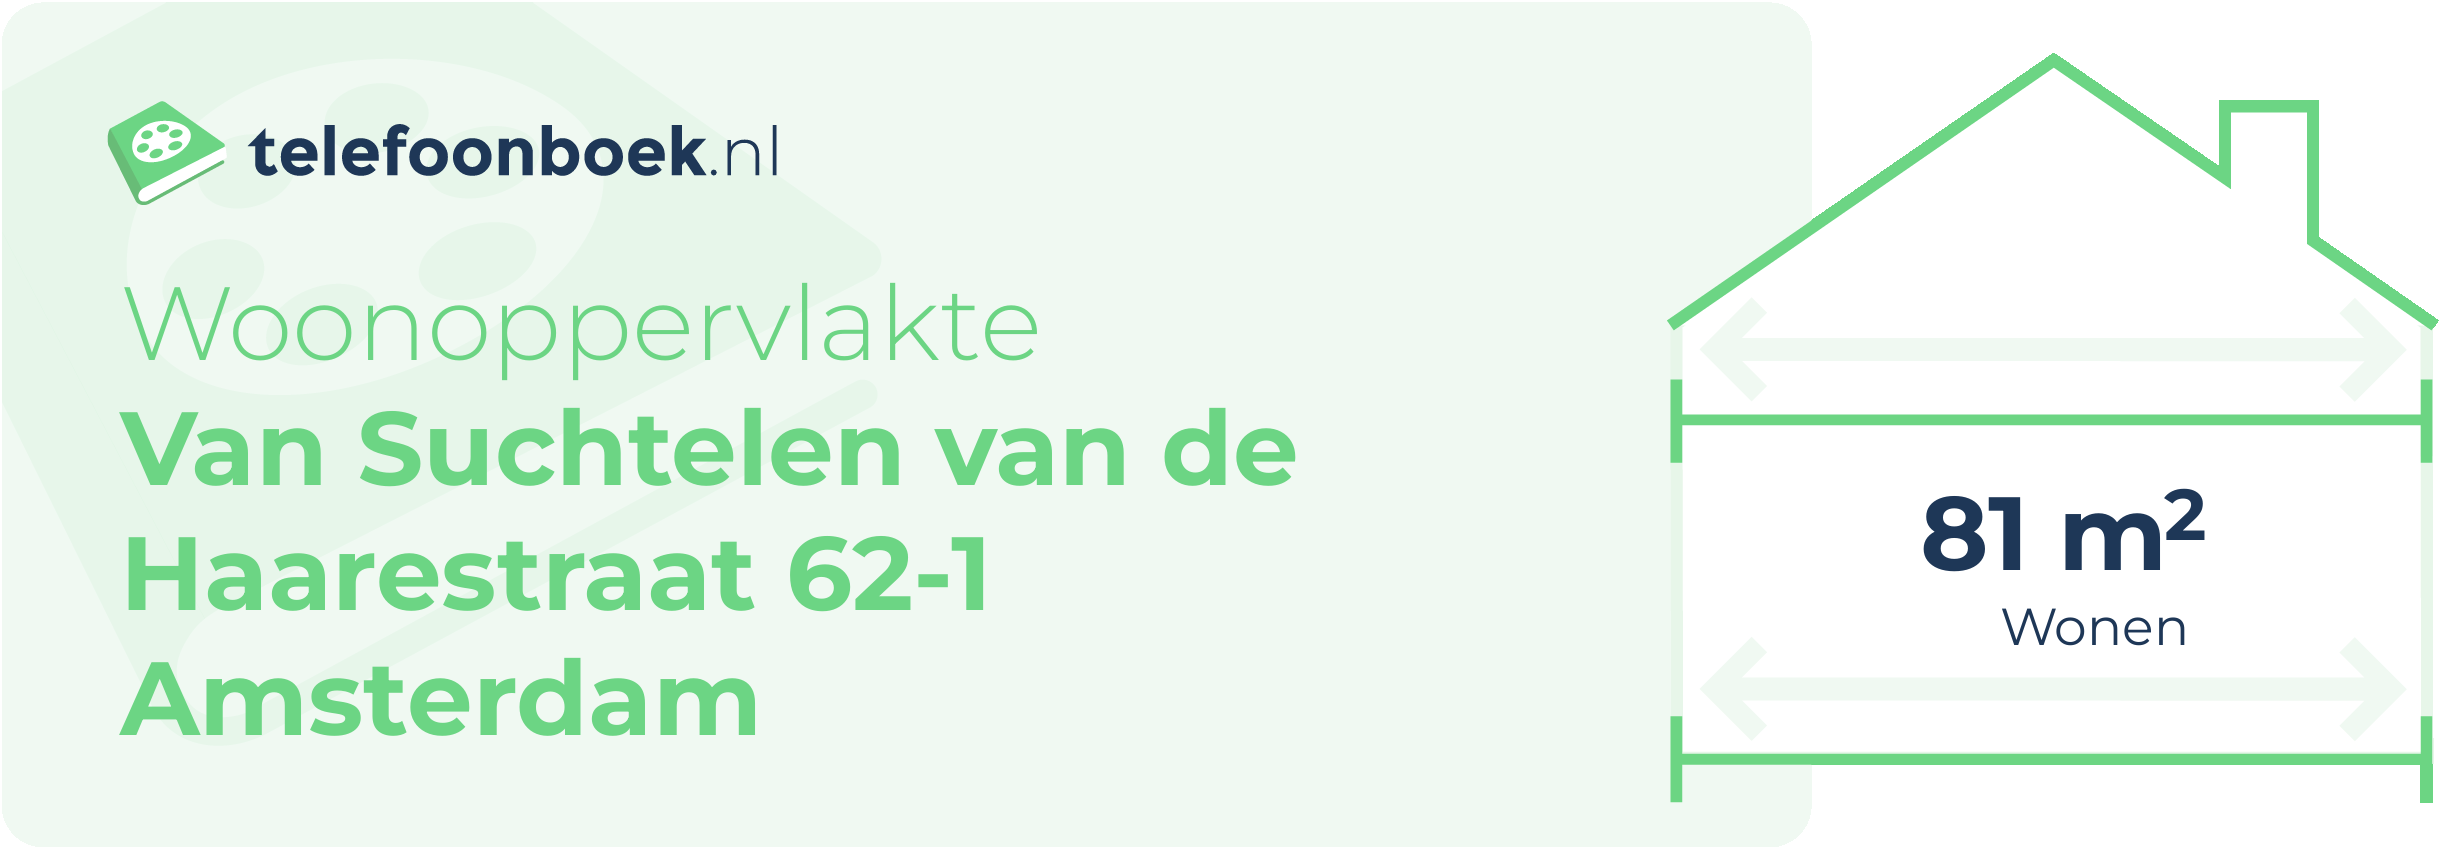 Woonoppervlakte Van Suchtelen Van De Haarestraat 62-1 Amsterdam